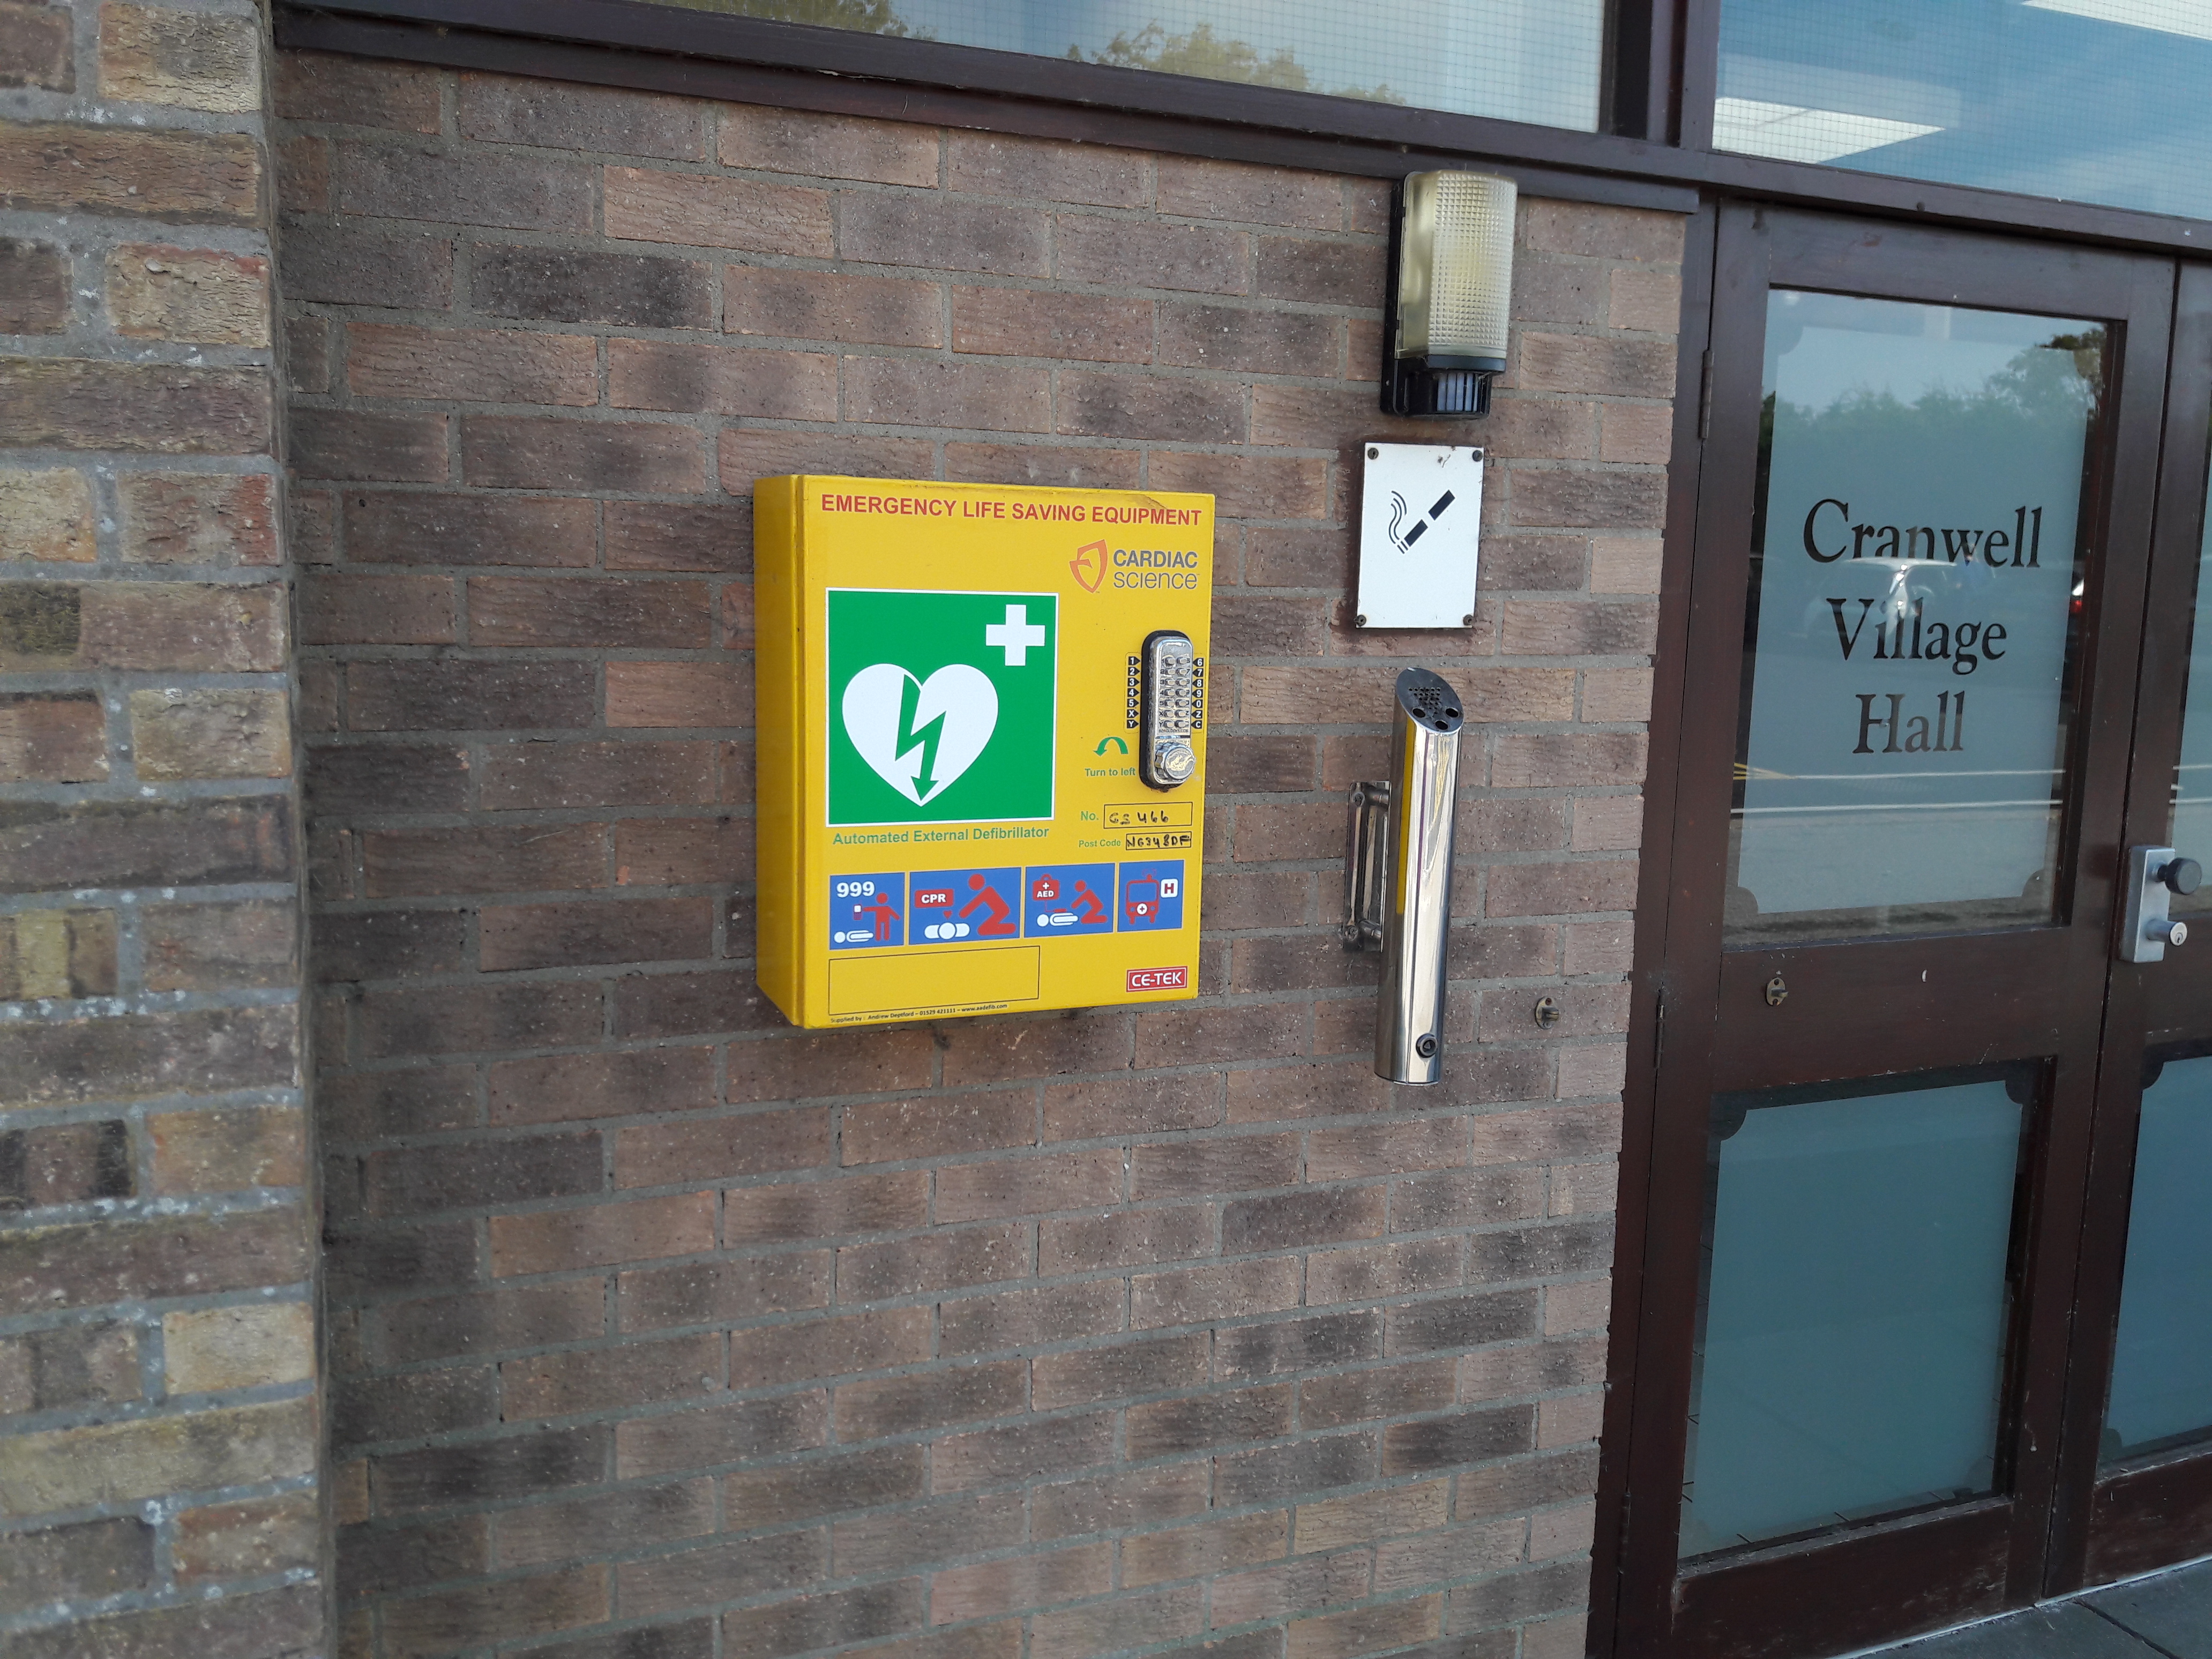 Defibrillators in our parish